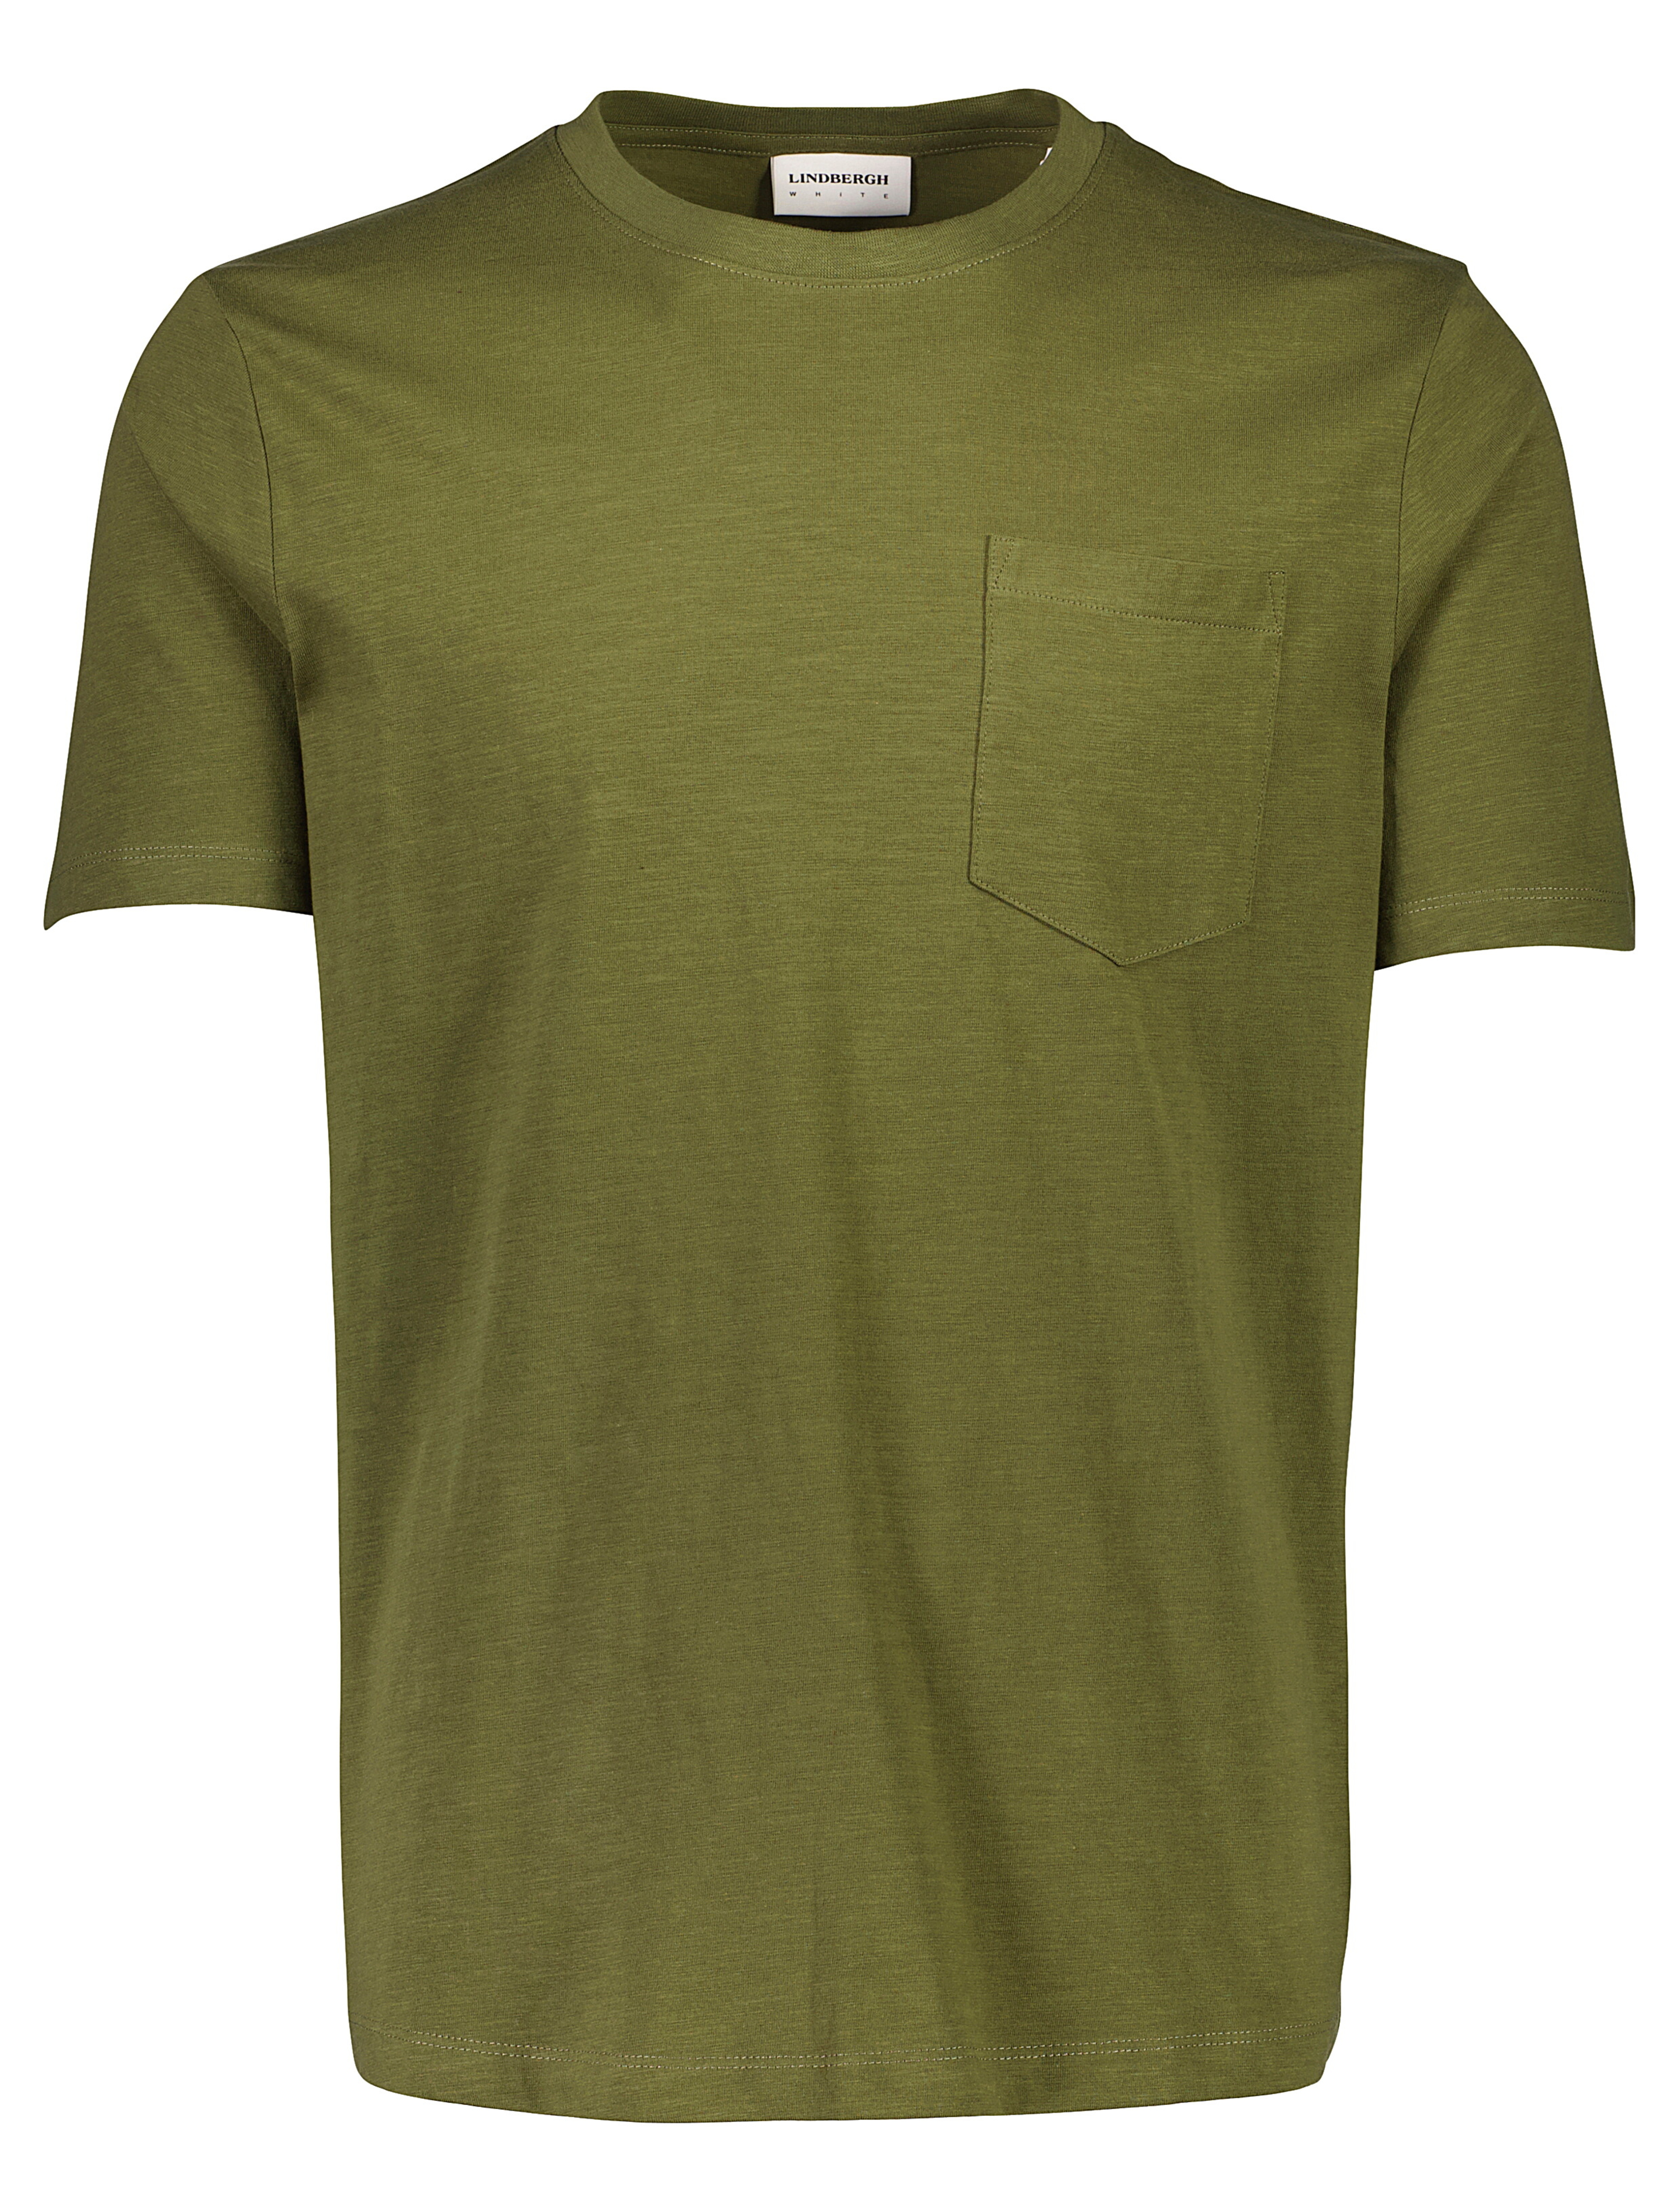 Lindbergh T-Shirt grün / dk army